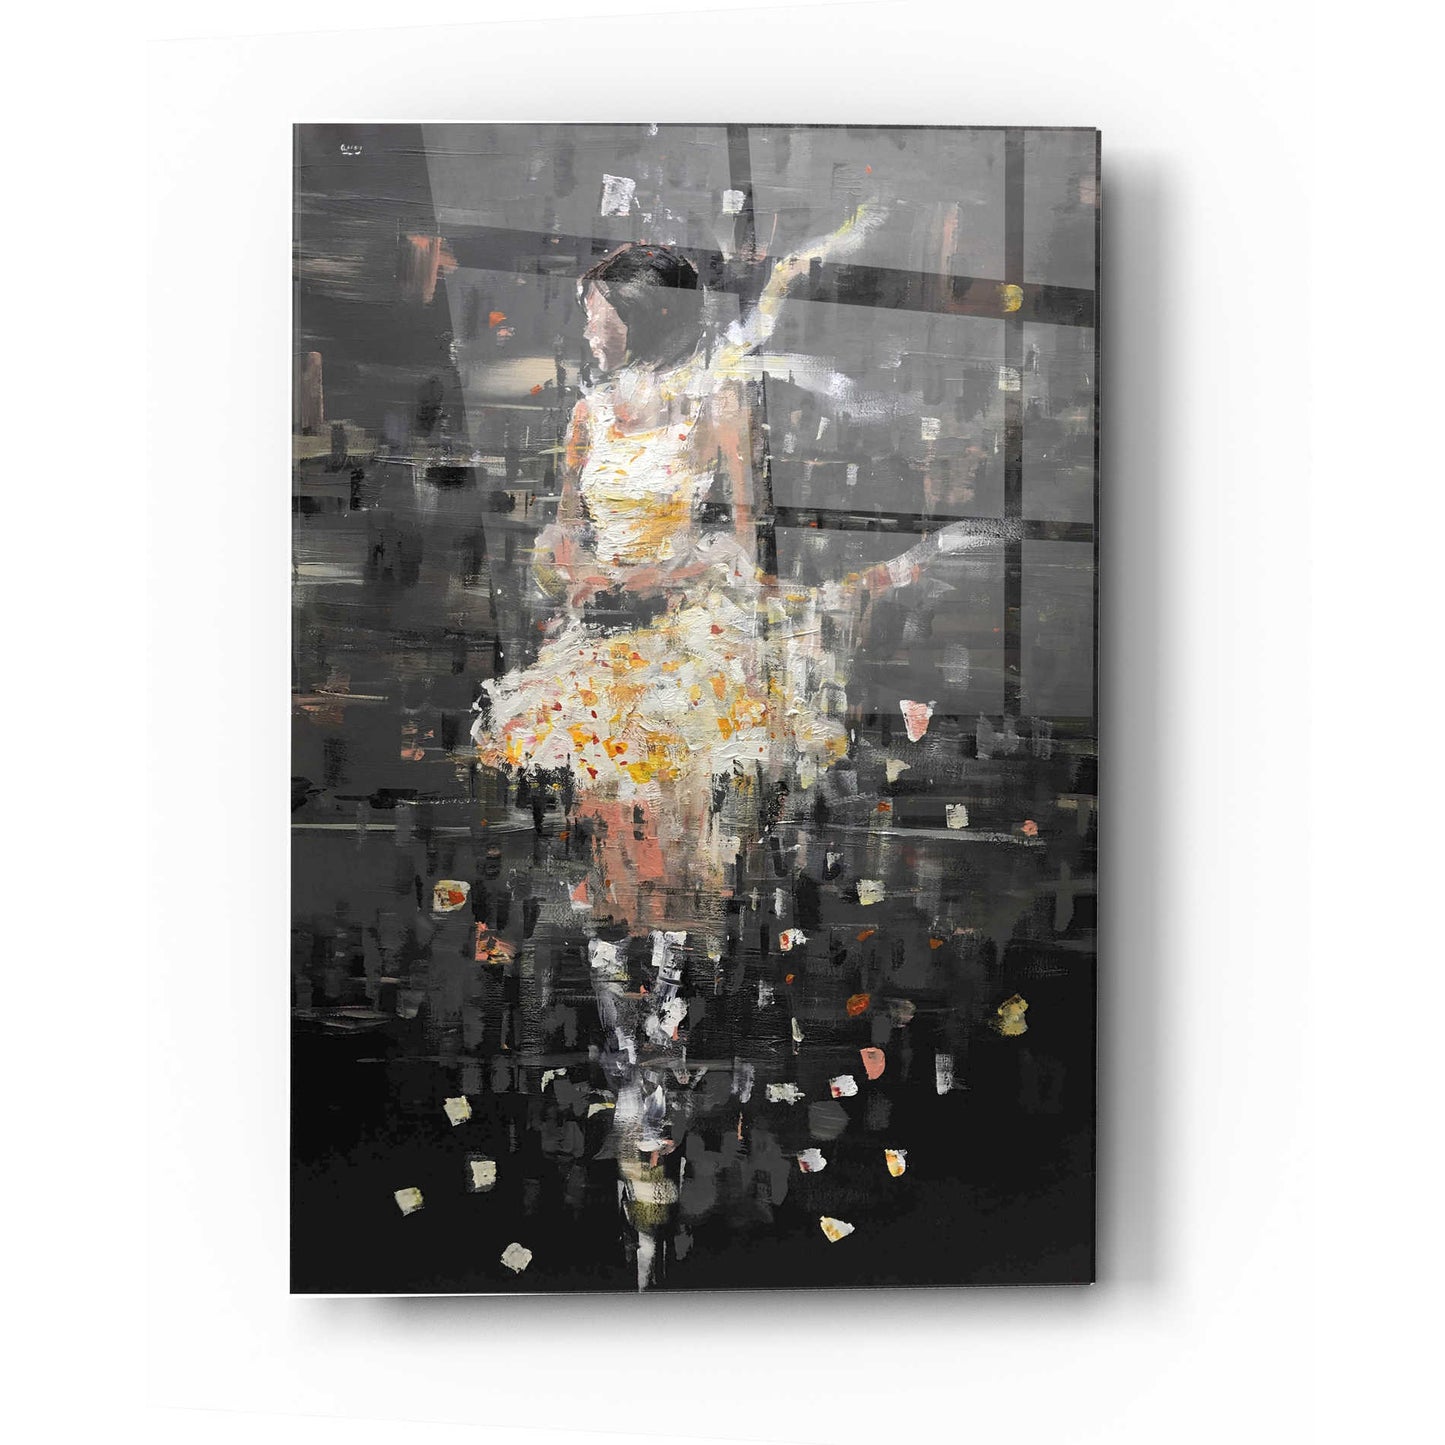 Epic Art 'She's Glowing' by Oscar Alvarez Pardo, Acrylic Glass Wall Art